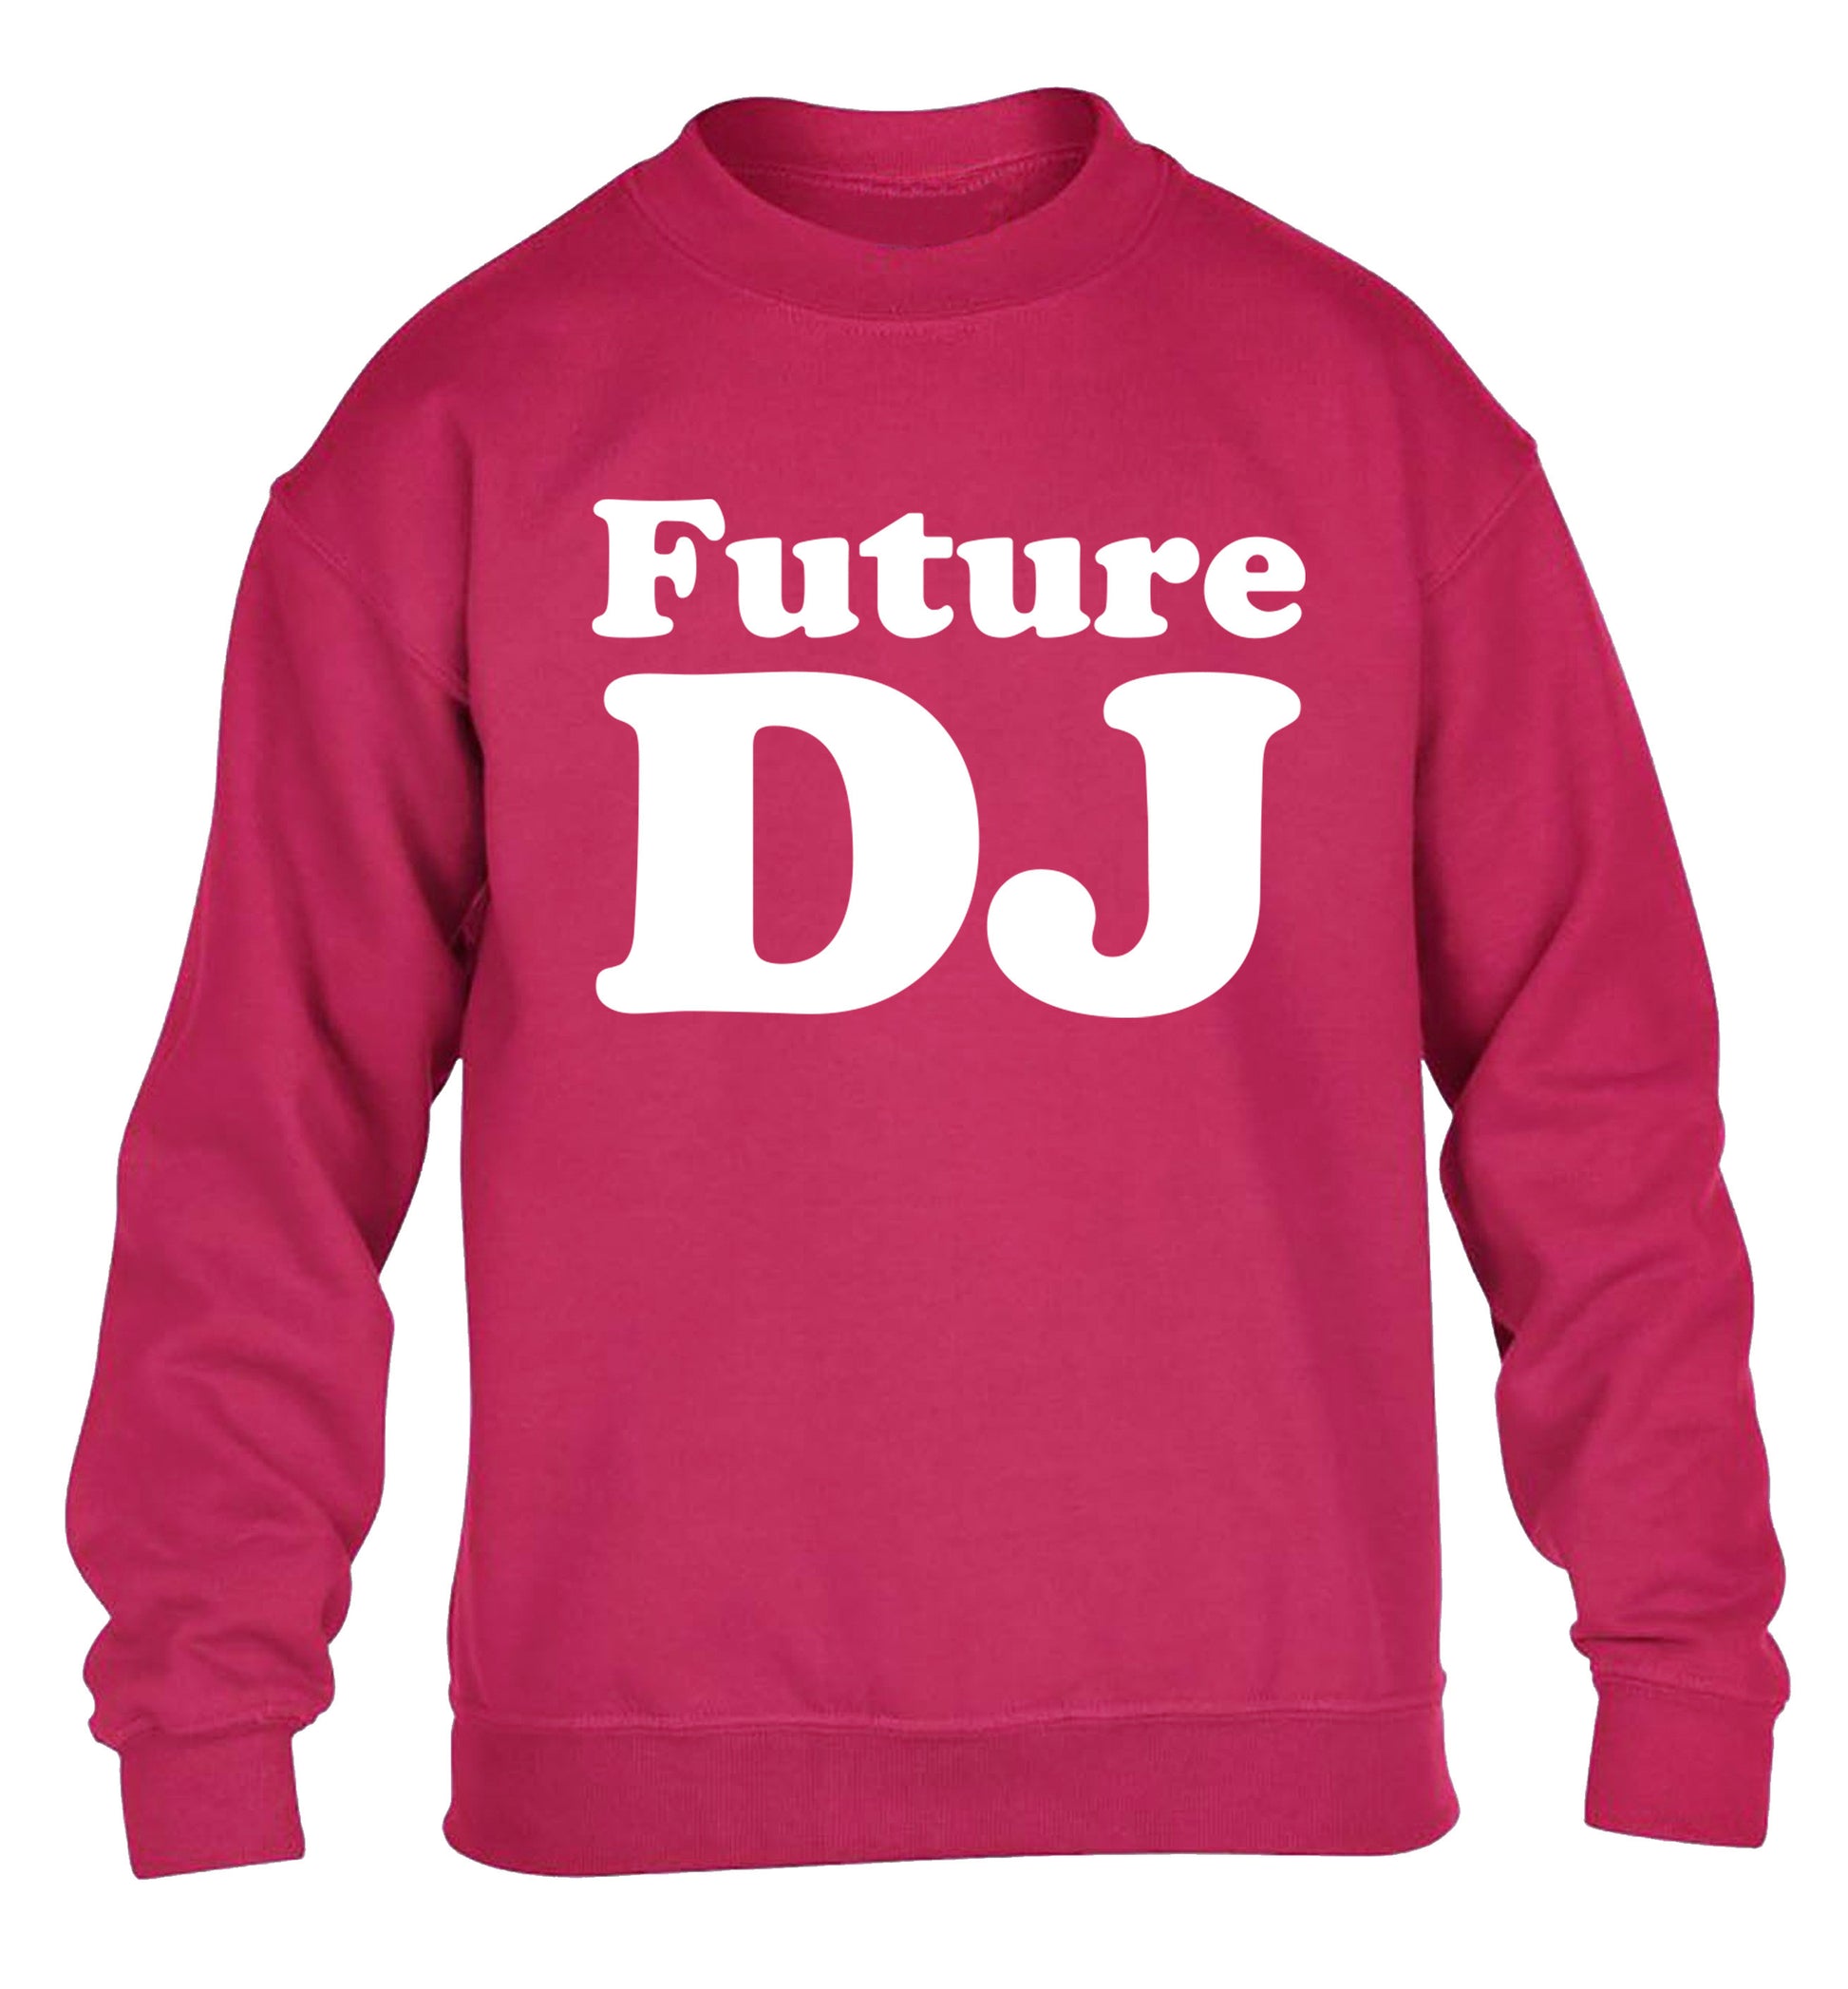 Future DJ children's pink sweater 12-14 Years